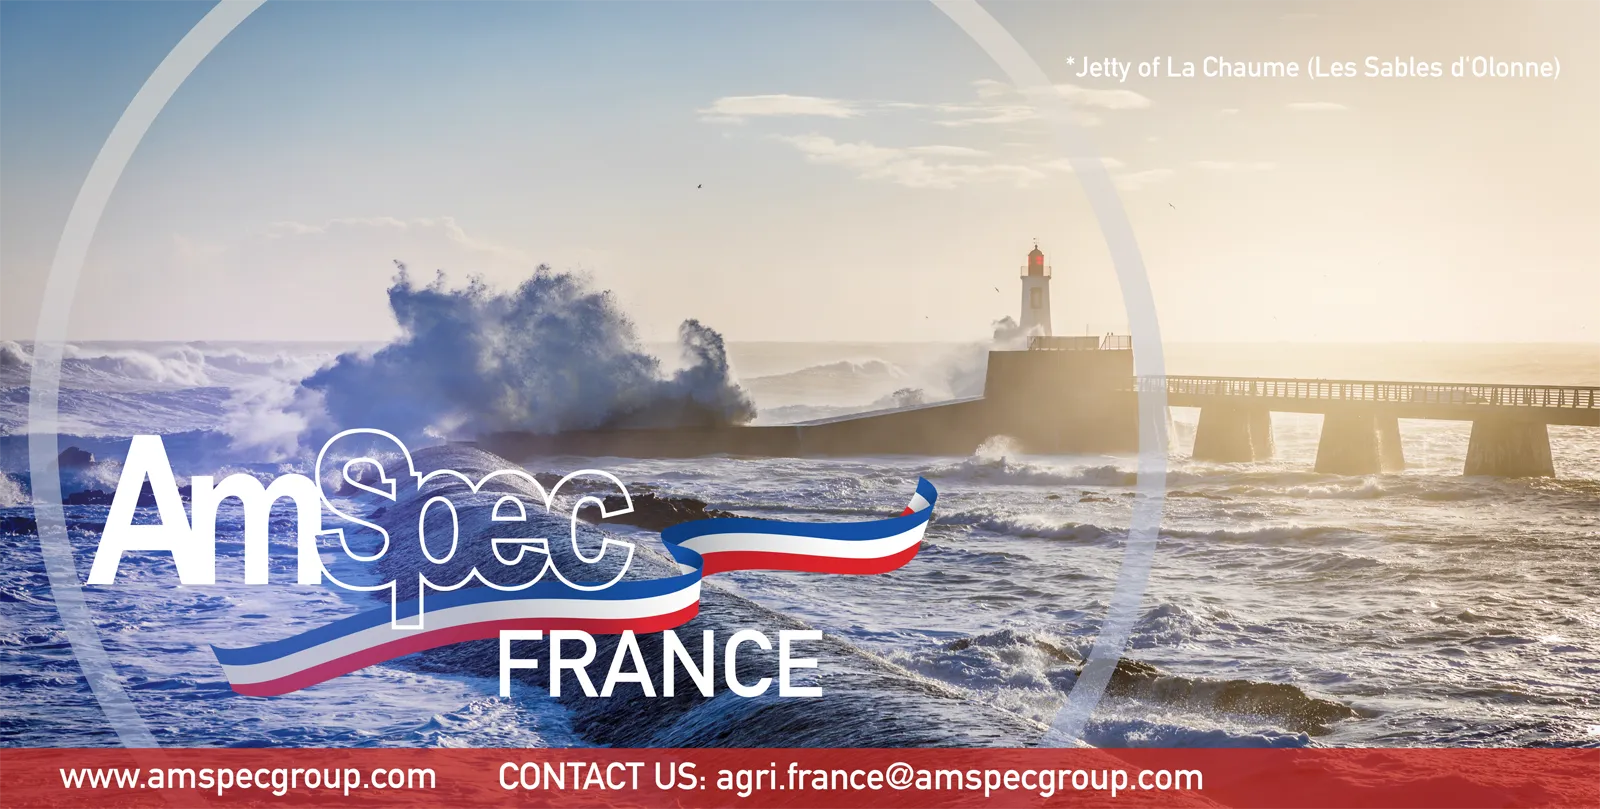 Flyer for AmSpec France.